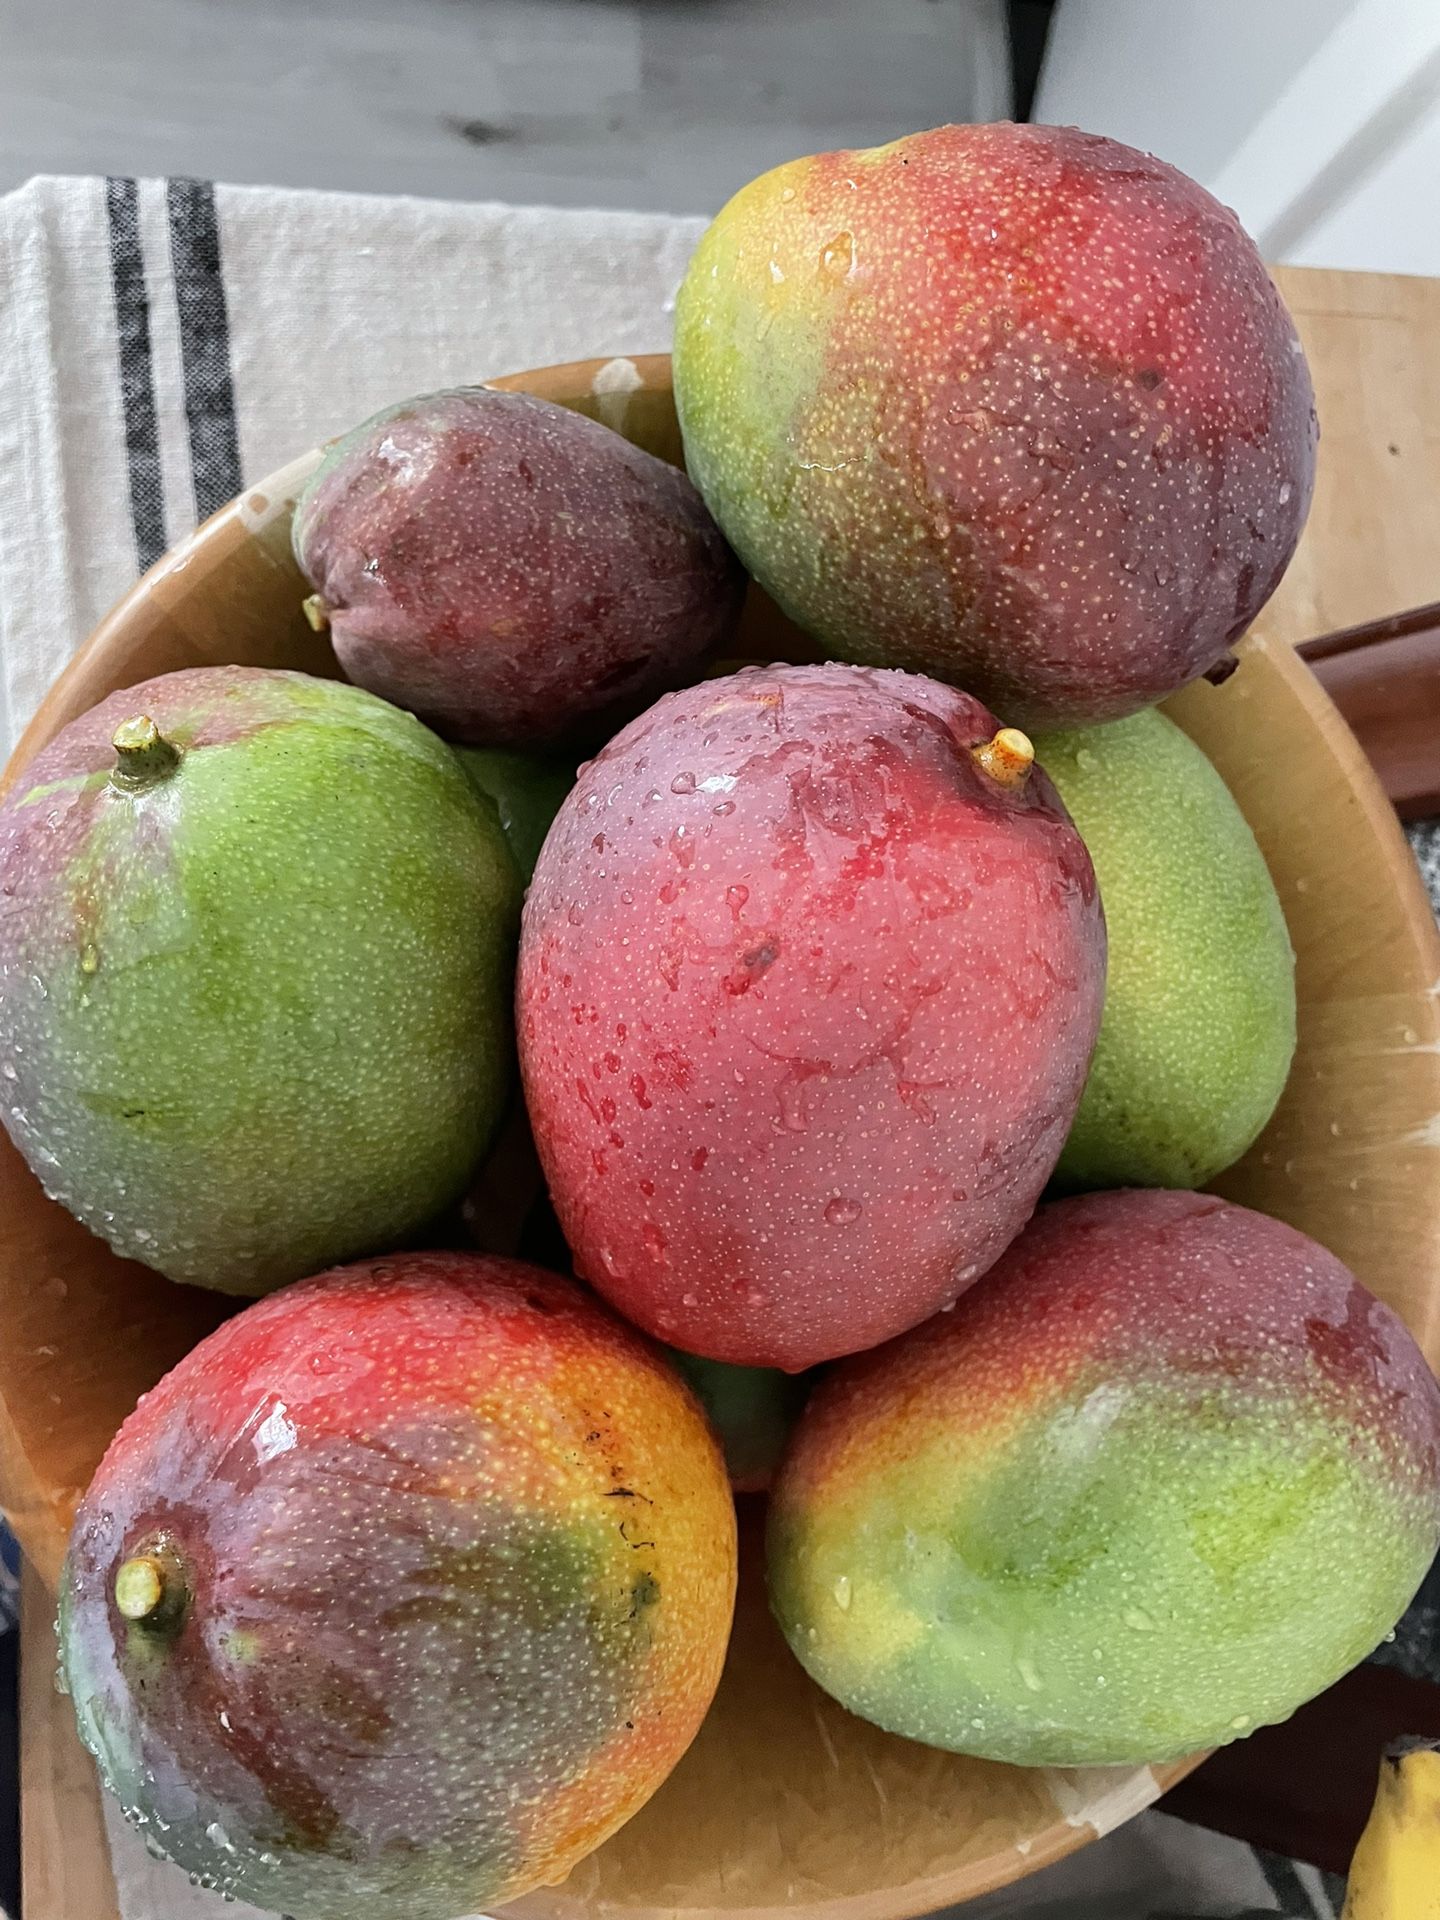 Organic Mangoes Florida Grown🥭 $2